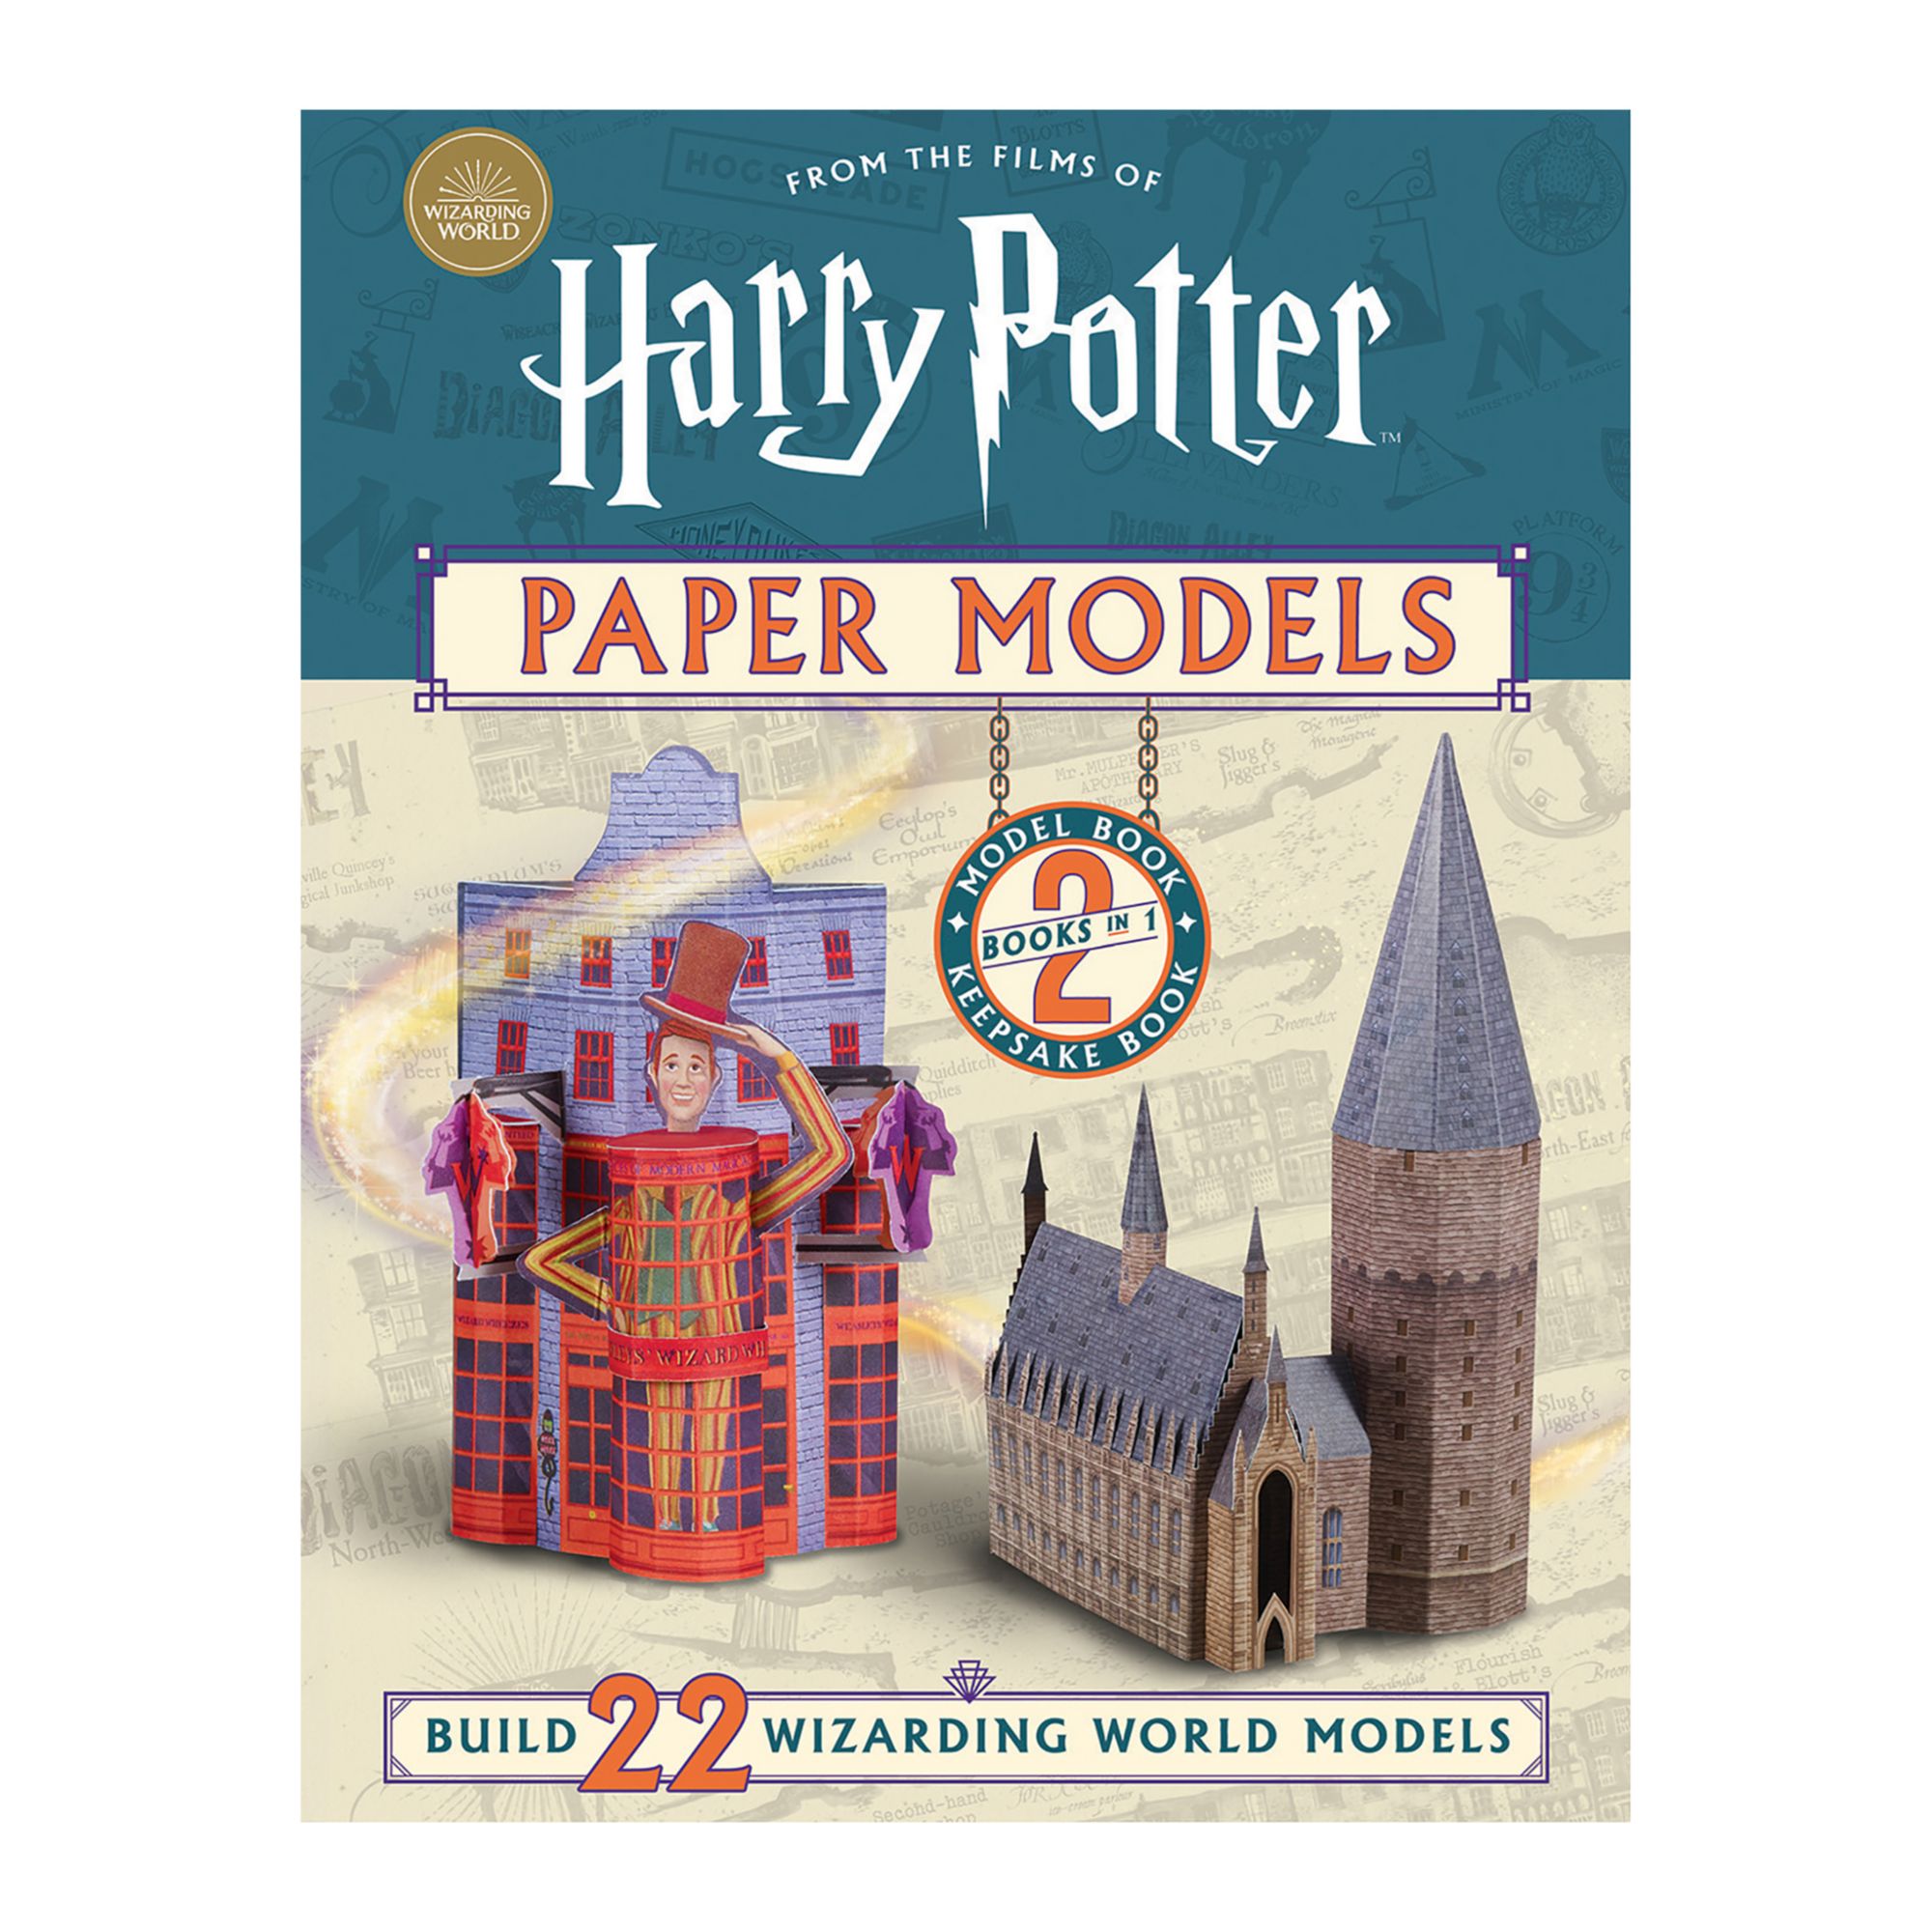 Harry Potter Paper Models